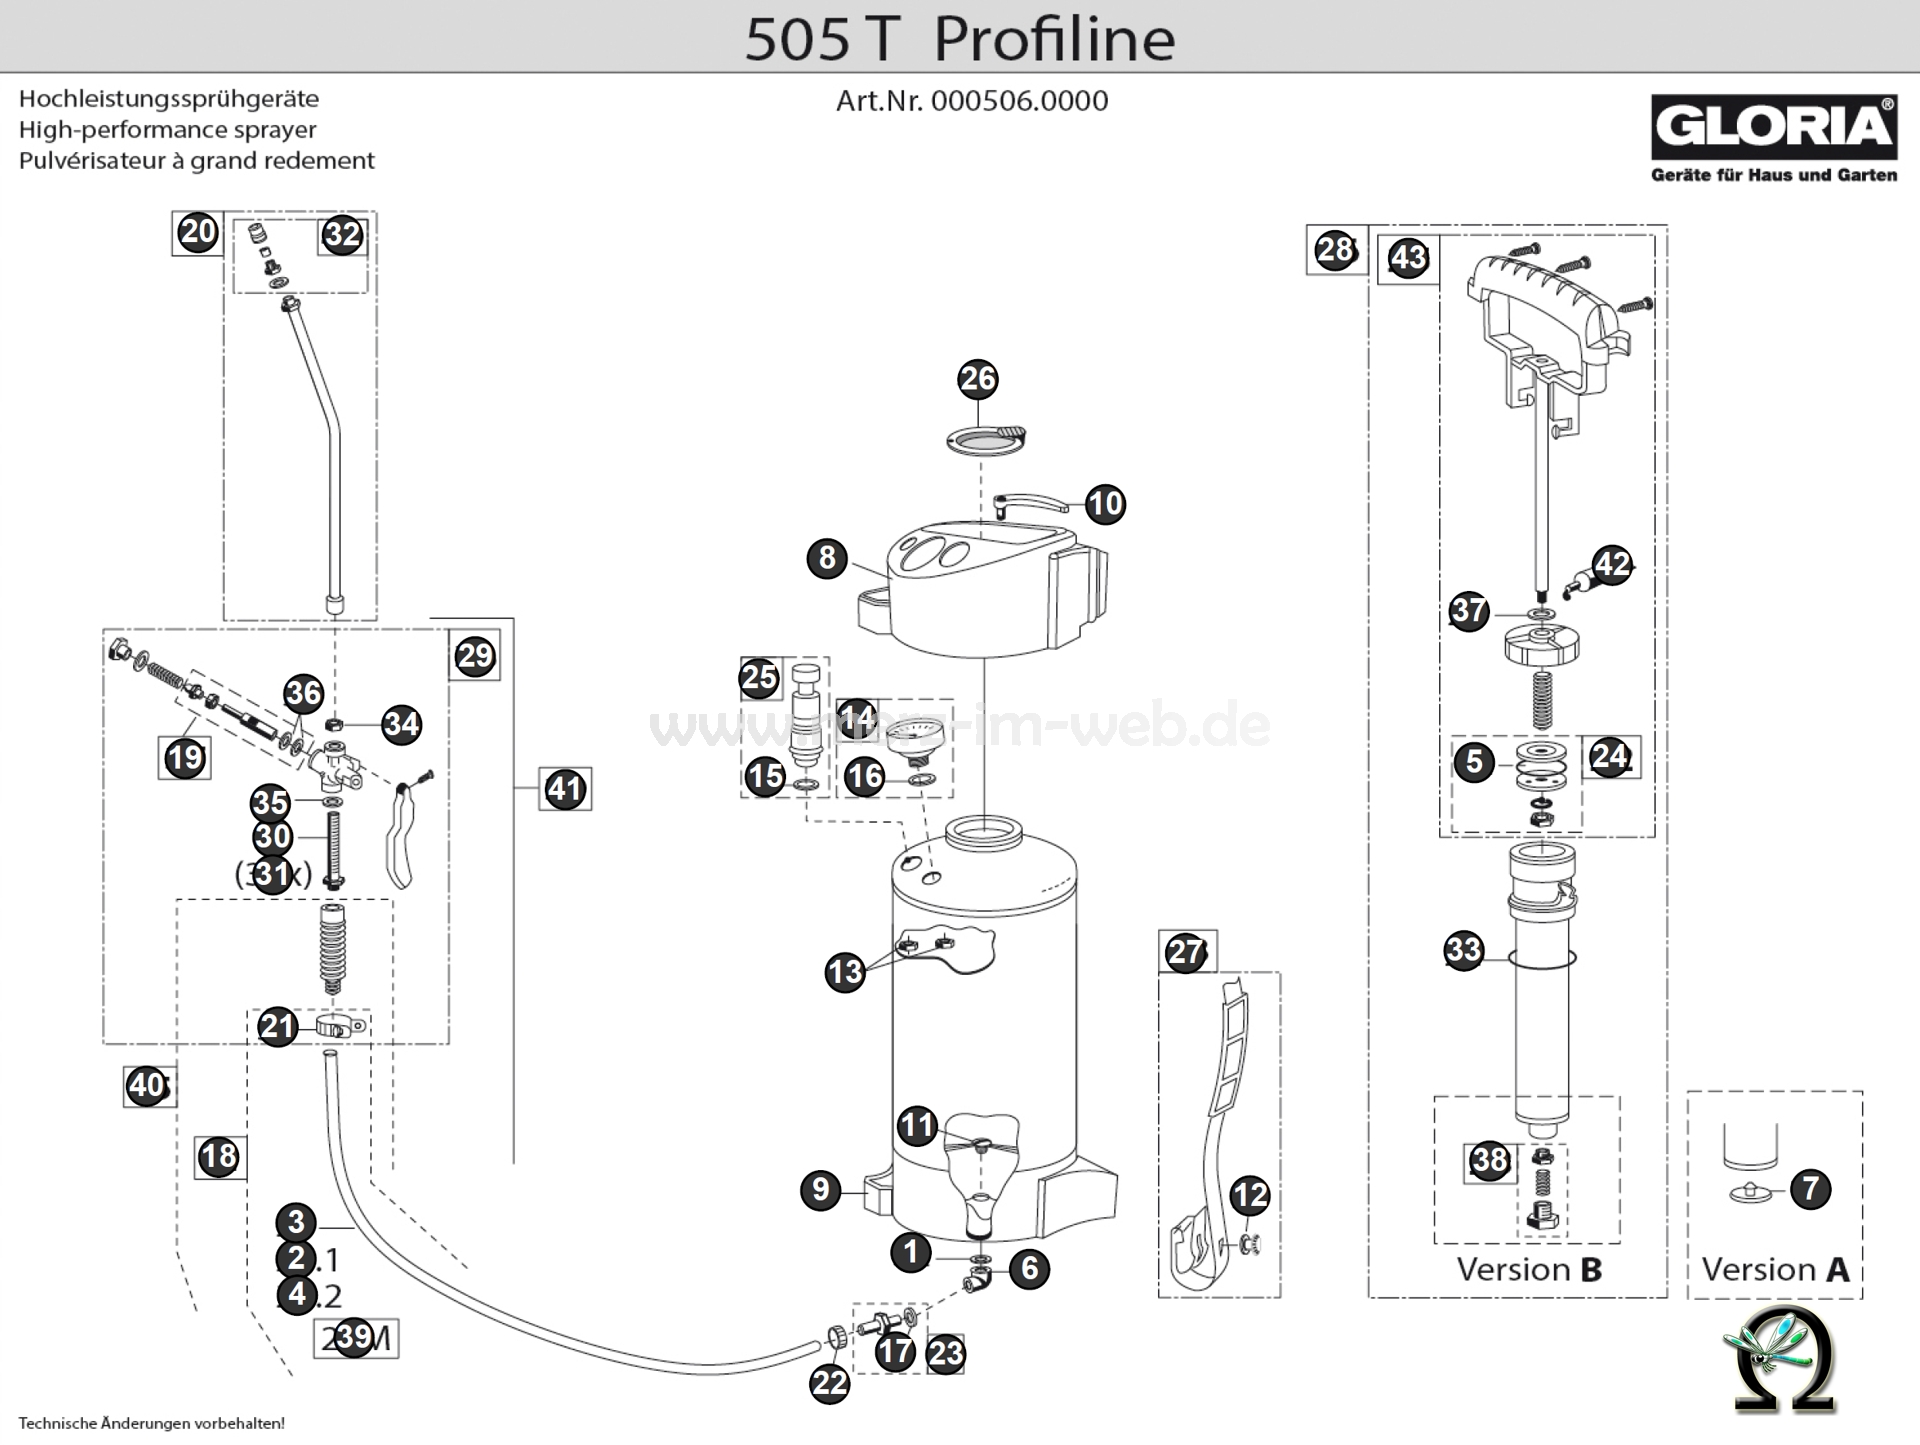 Die Ersatzteilzeichnung mit der Teileliste für das Gloria Hochleistungssprühgerät 505 T Profiline zum herunterladen und ausdrucken.